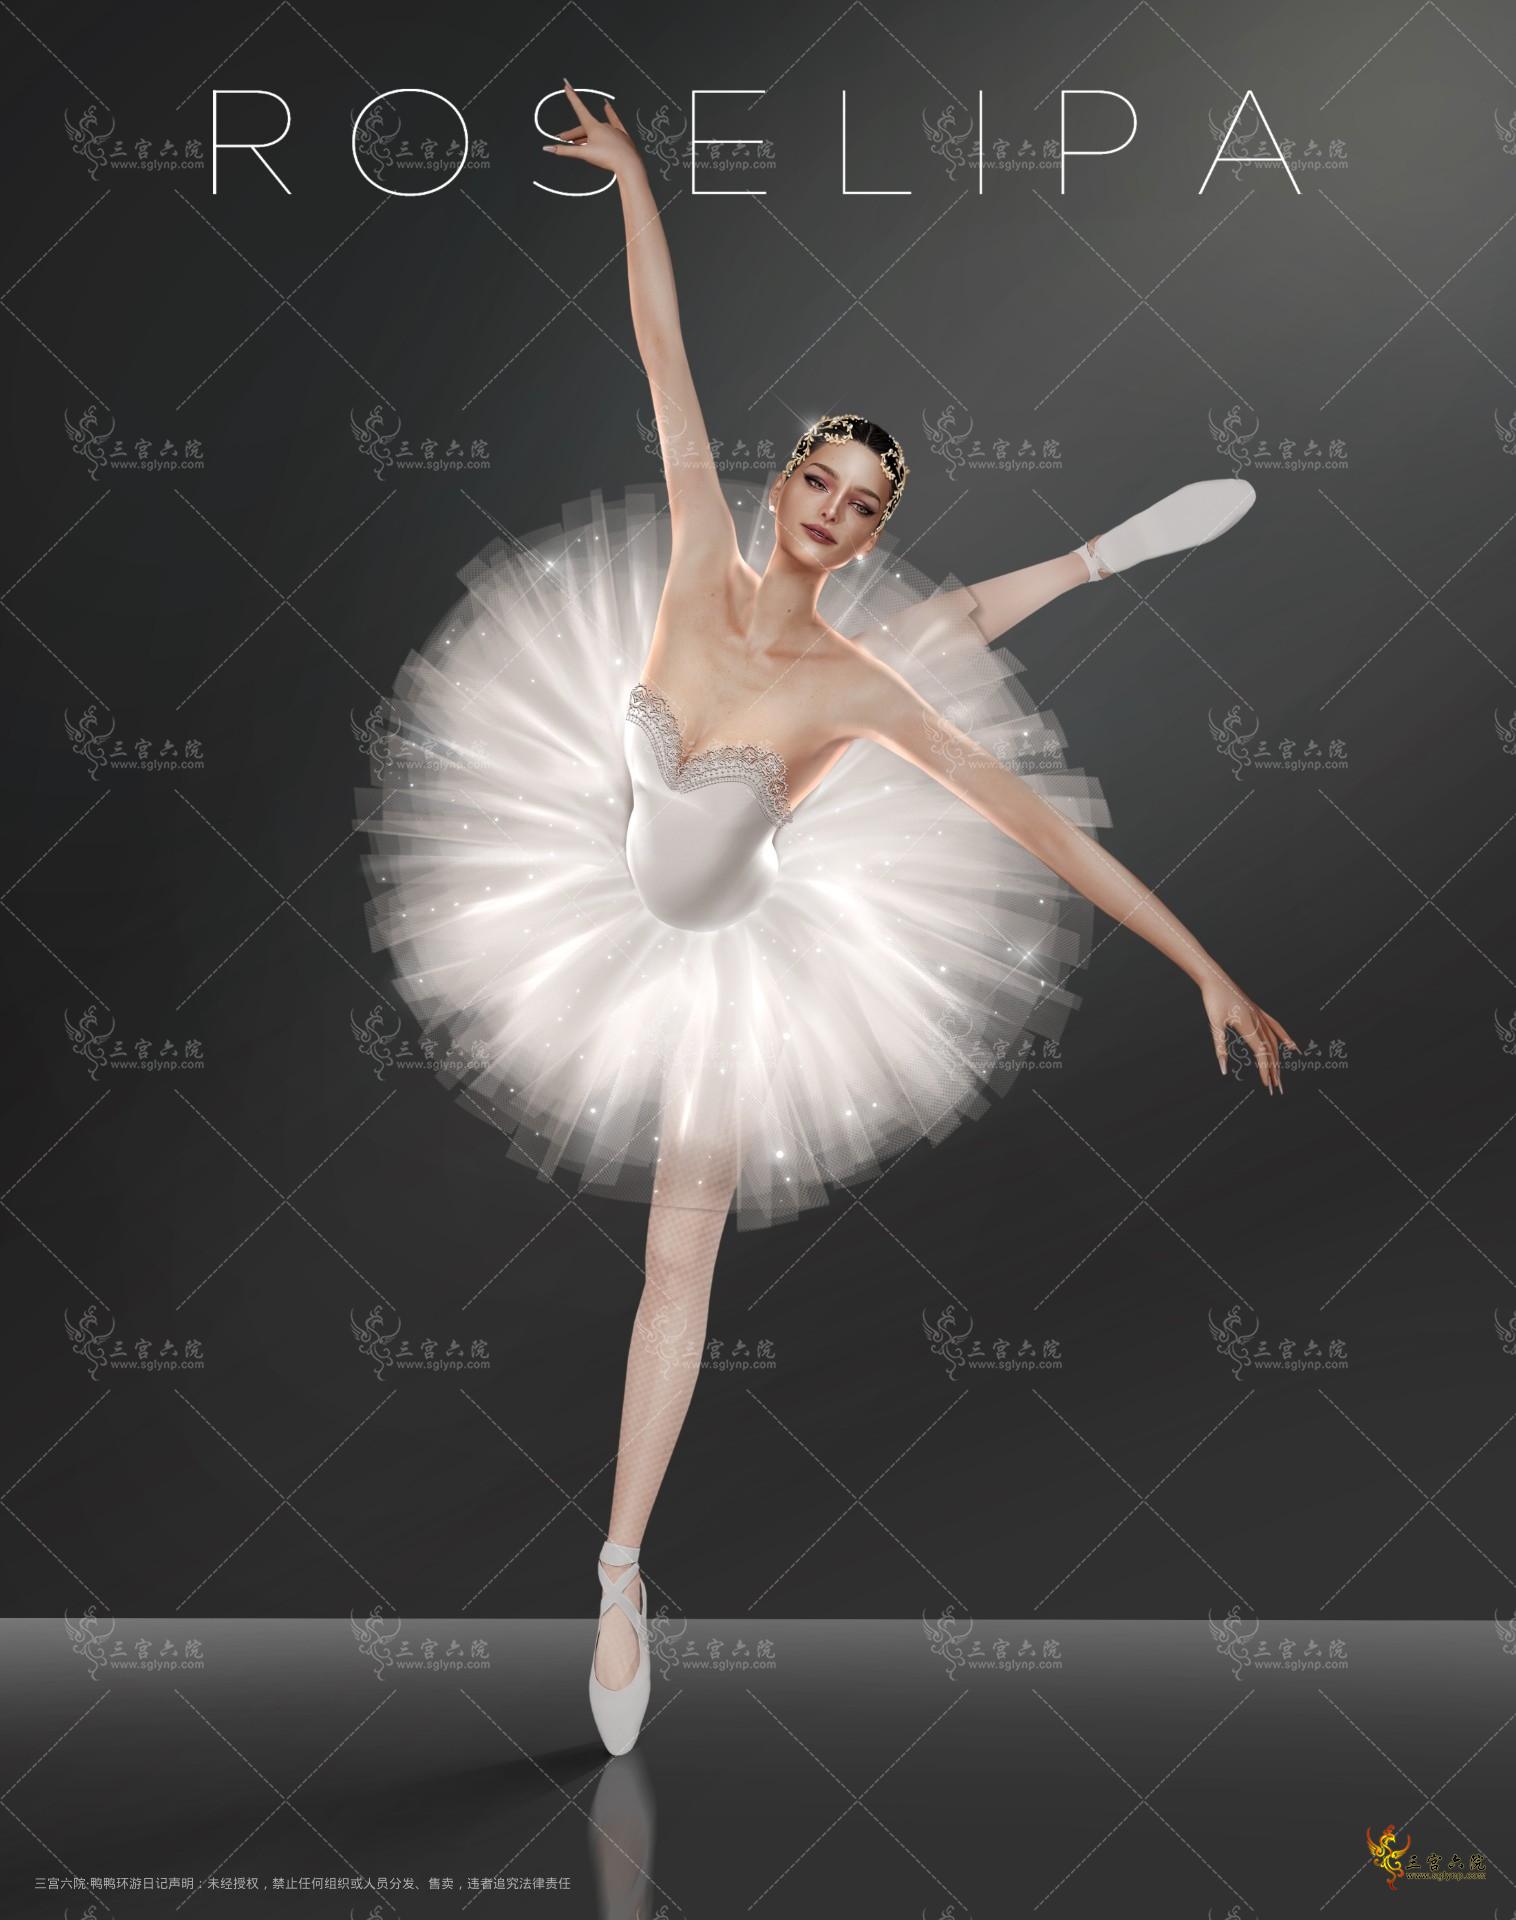 ballet pose cover.jpg